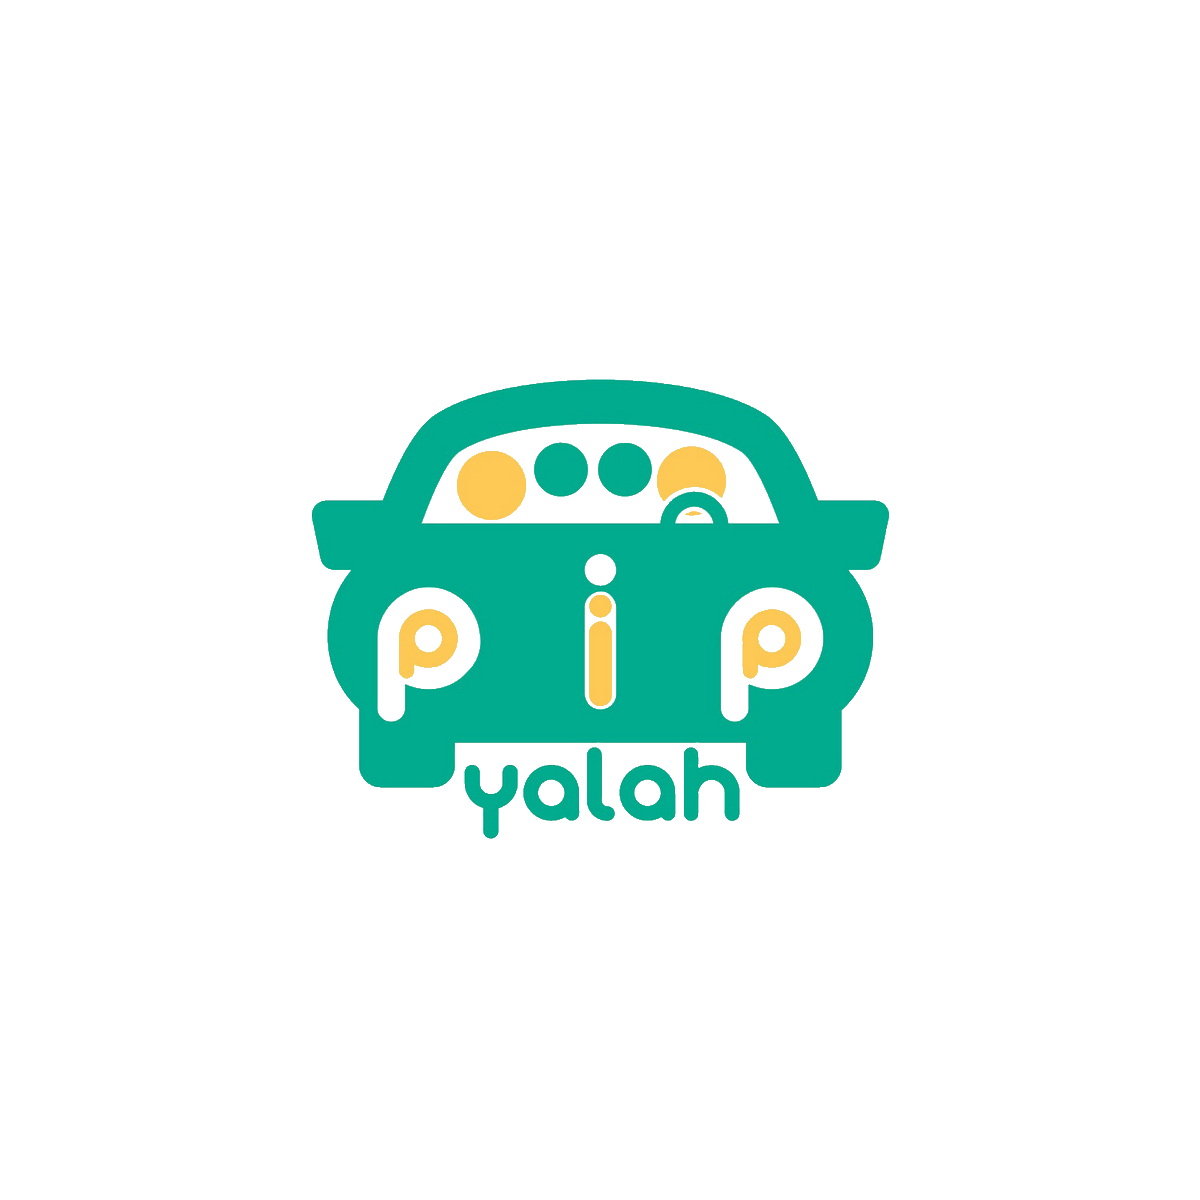 Pip Pip Yalah-Covoiturage Maroc-start-up